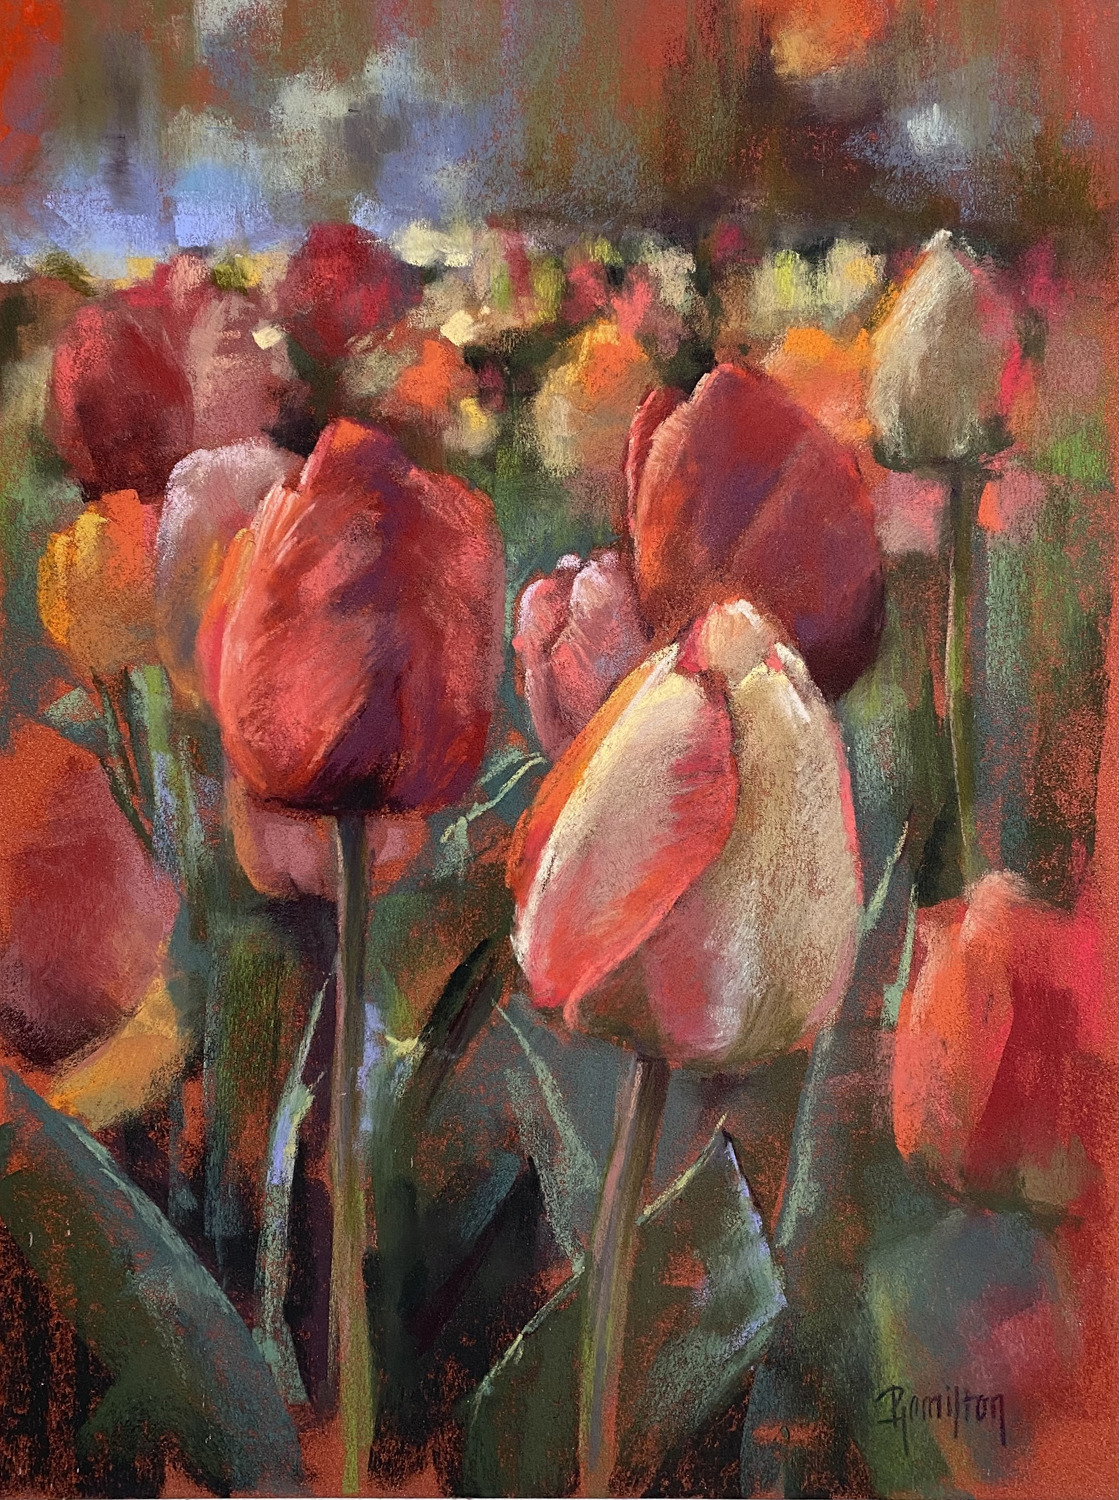 Pastel paintings - Pamela Hamilton, “Tulips on Fargo,” pastel on paper, 16 x 12 in.